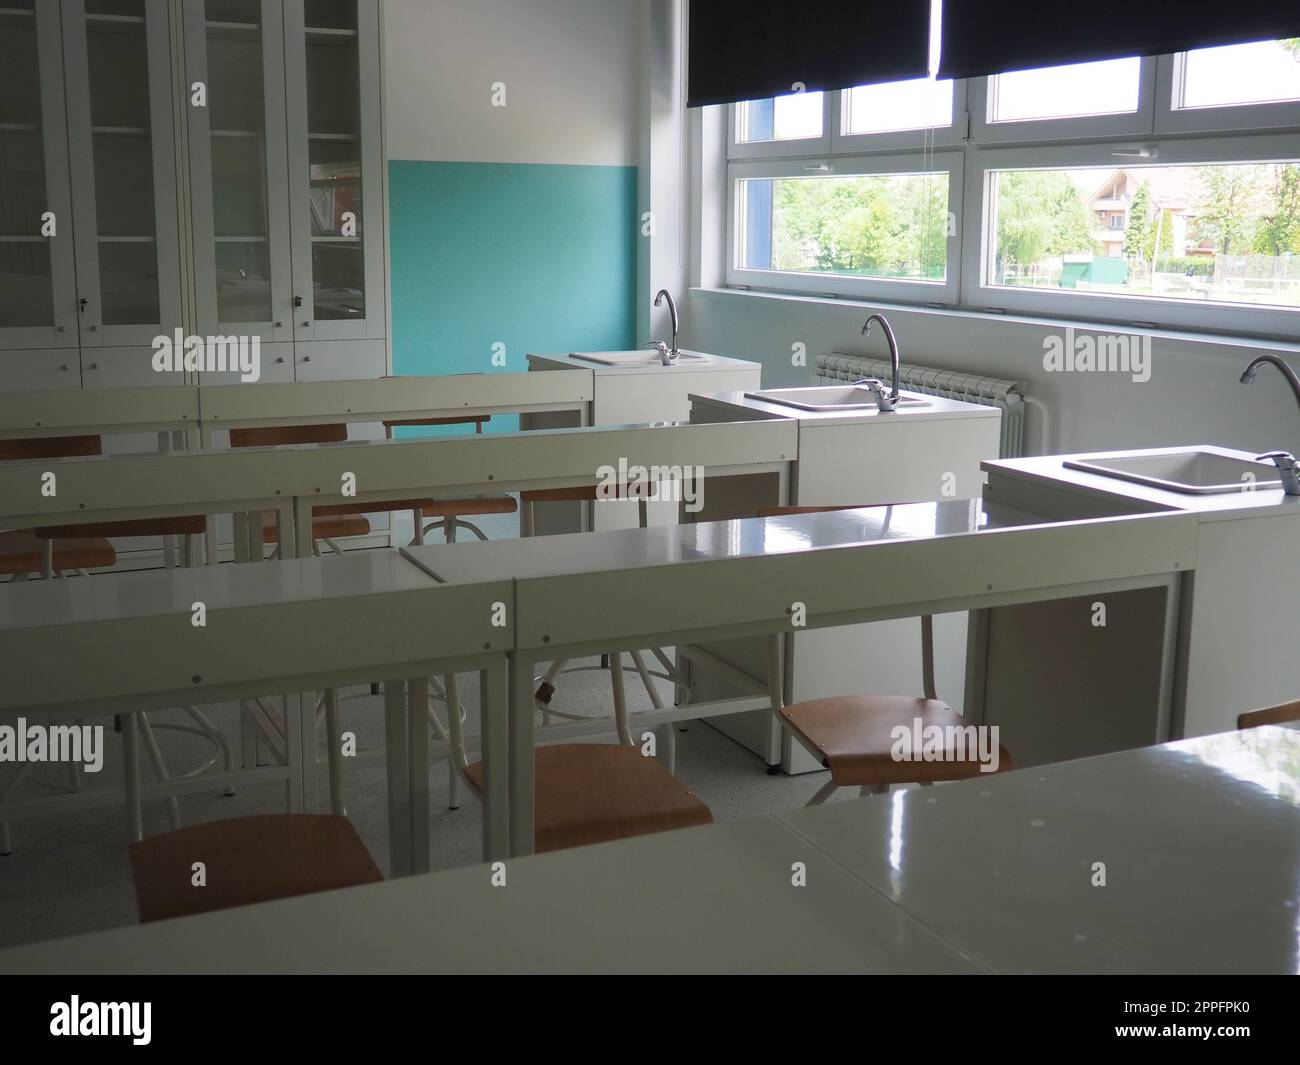 Chemiezimmer in einer modernen neuen Schule. Wunderschöne weiße Möbel mit Waschbecken und Waschbecken. Große Fenster mit Verdunkelungsvorhängen oder Jalousien. Leeres Klassenzimmer. Möbel und Schulausstattung Stockfoto